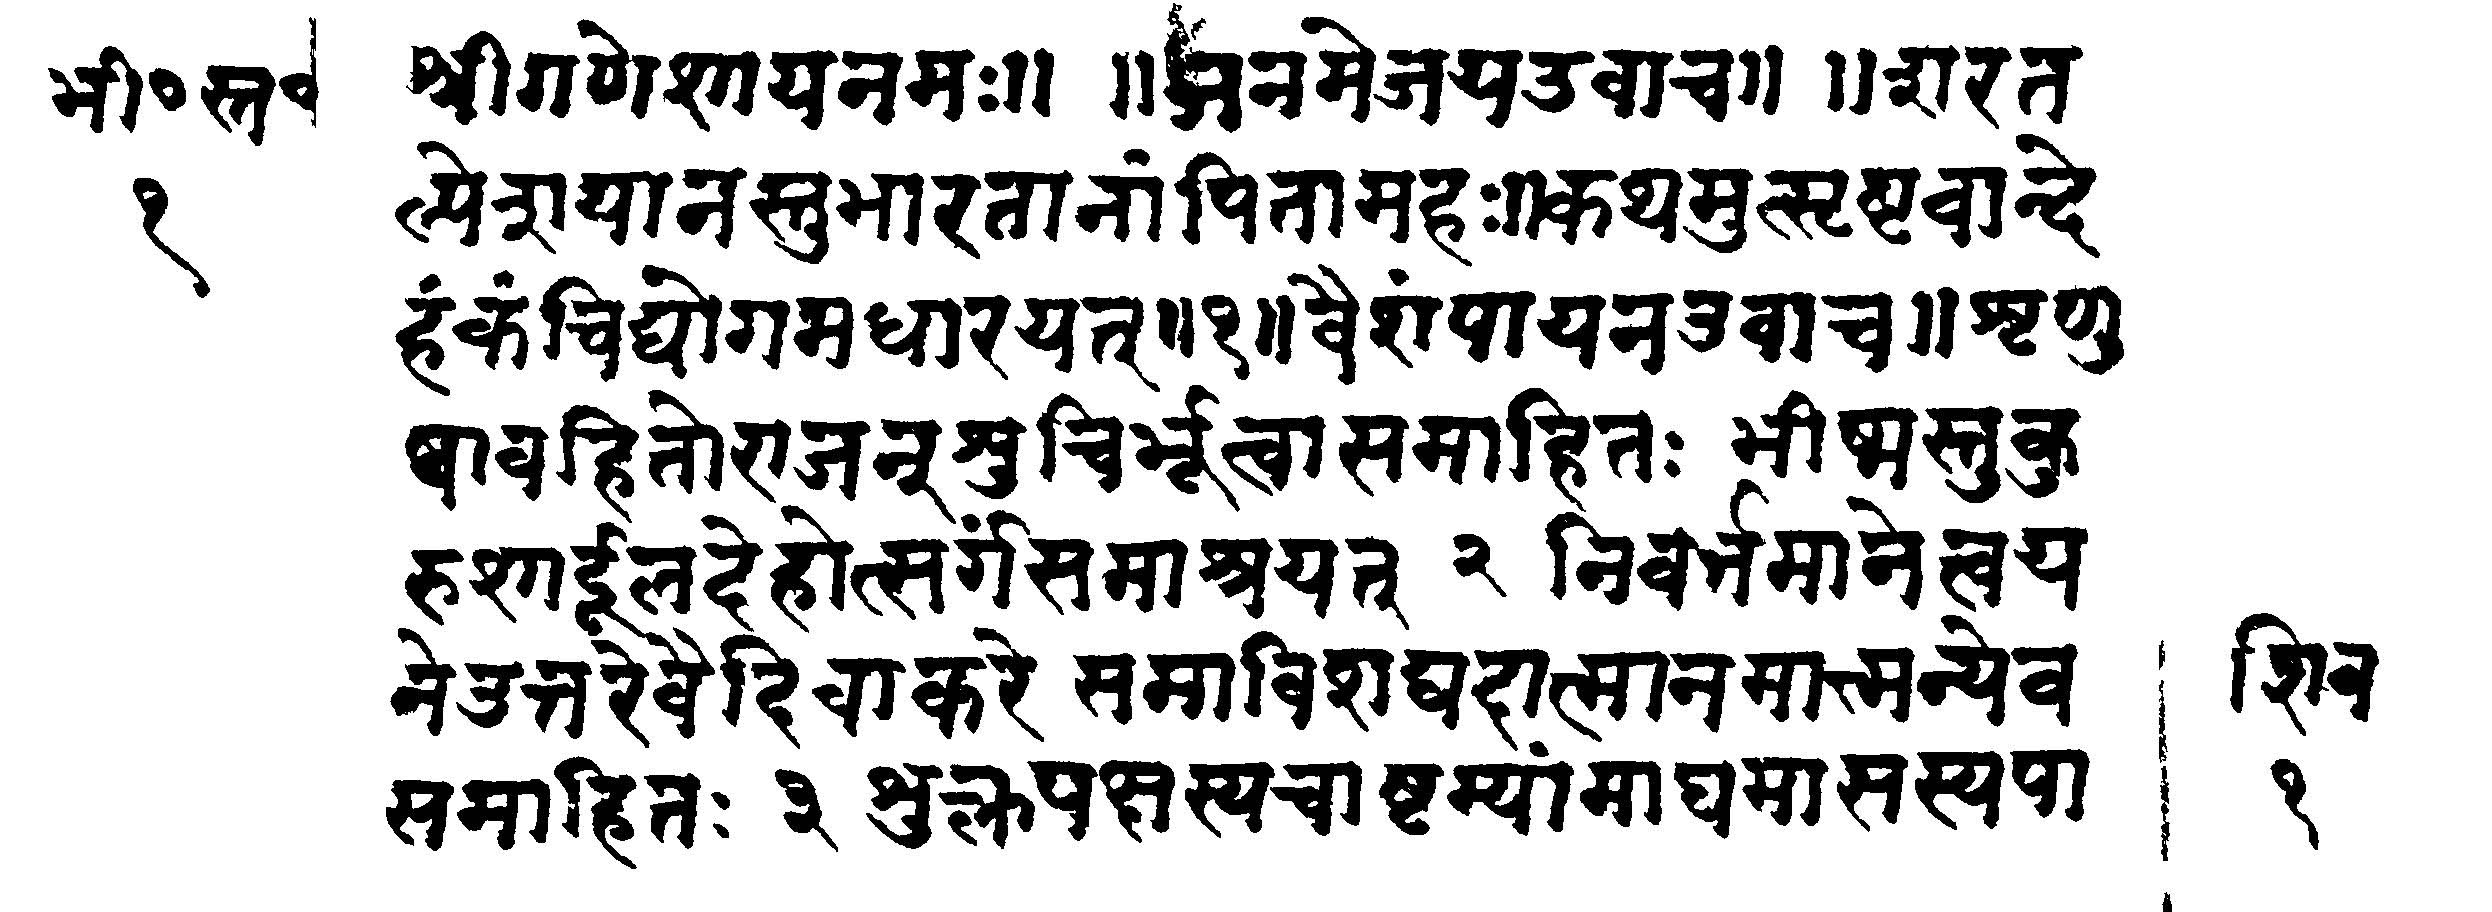 Sanskrit.jpg